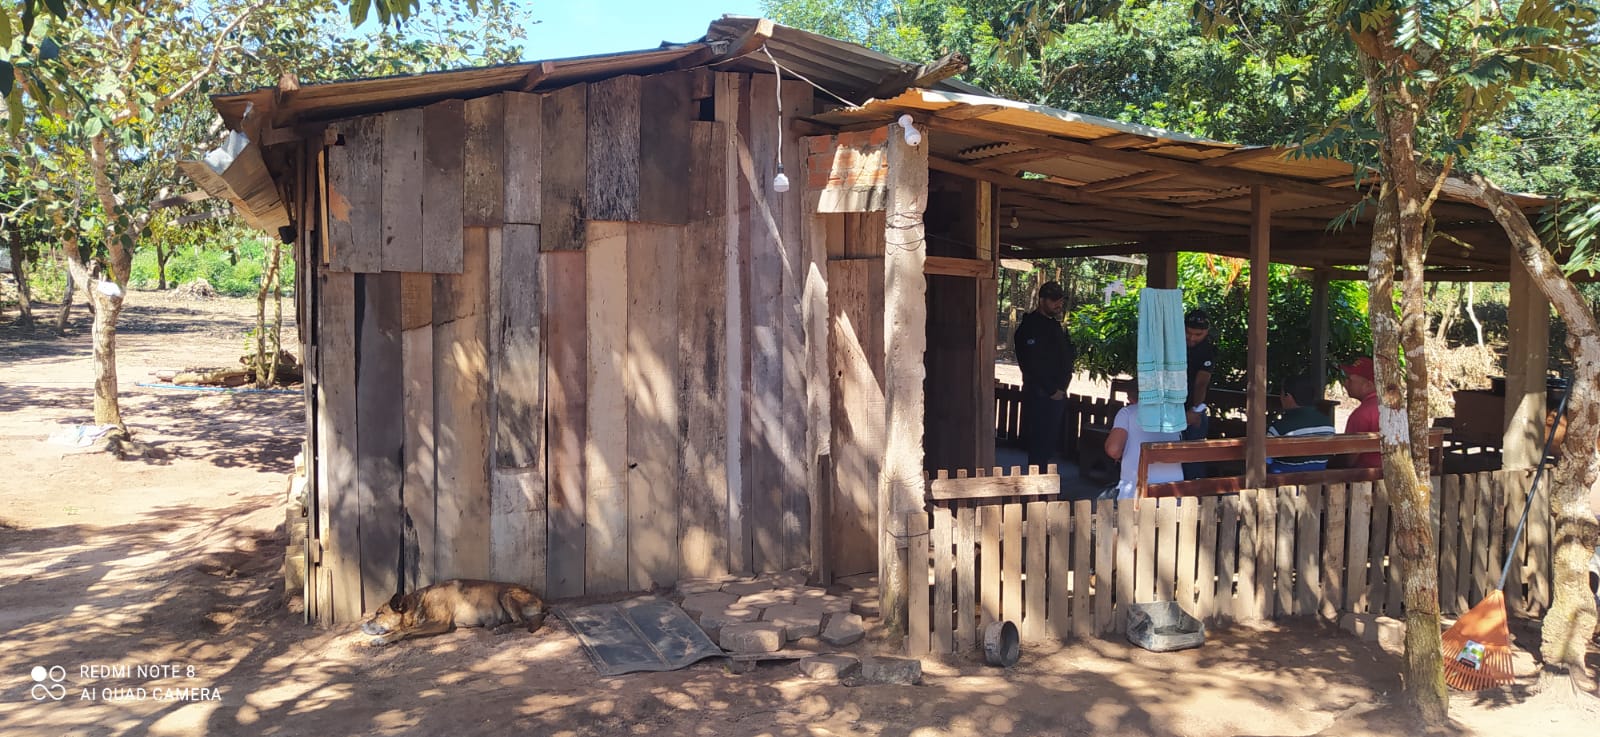 Clinicas terapeuticas clandestinas sao fechadas no interior de Mato Grosso